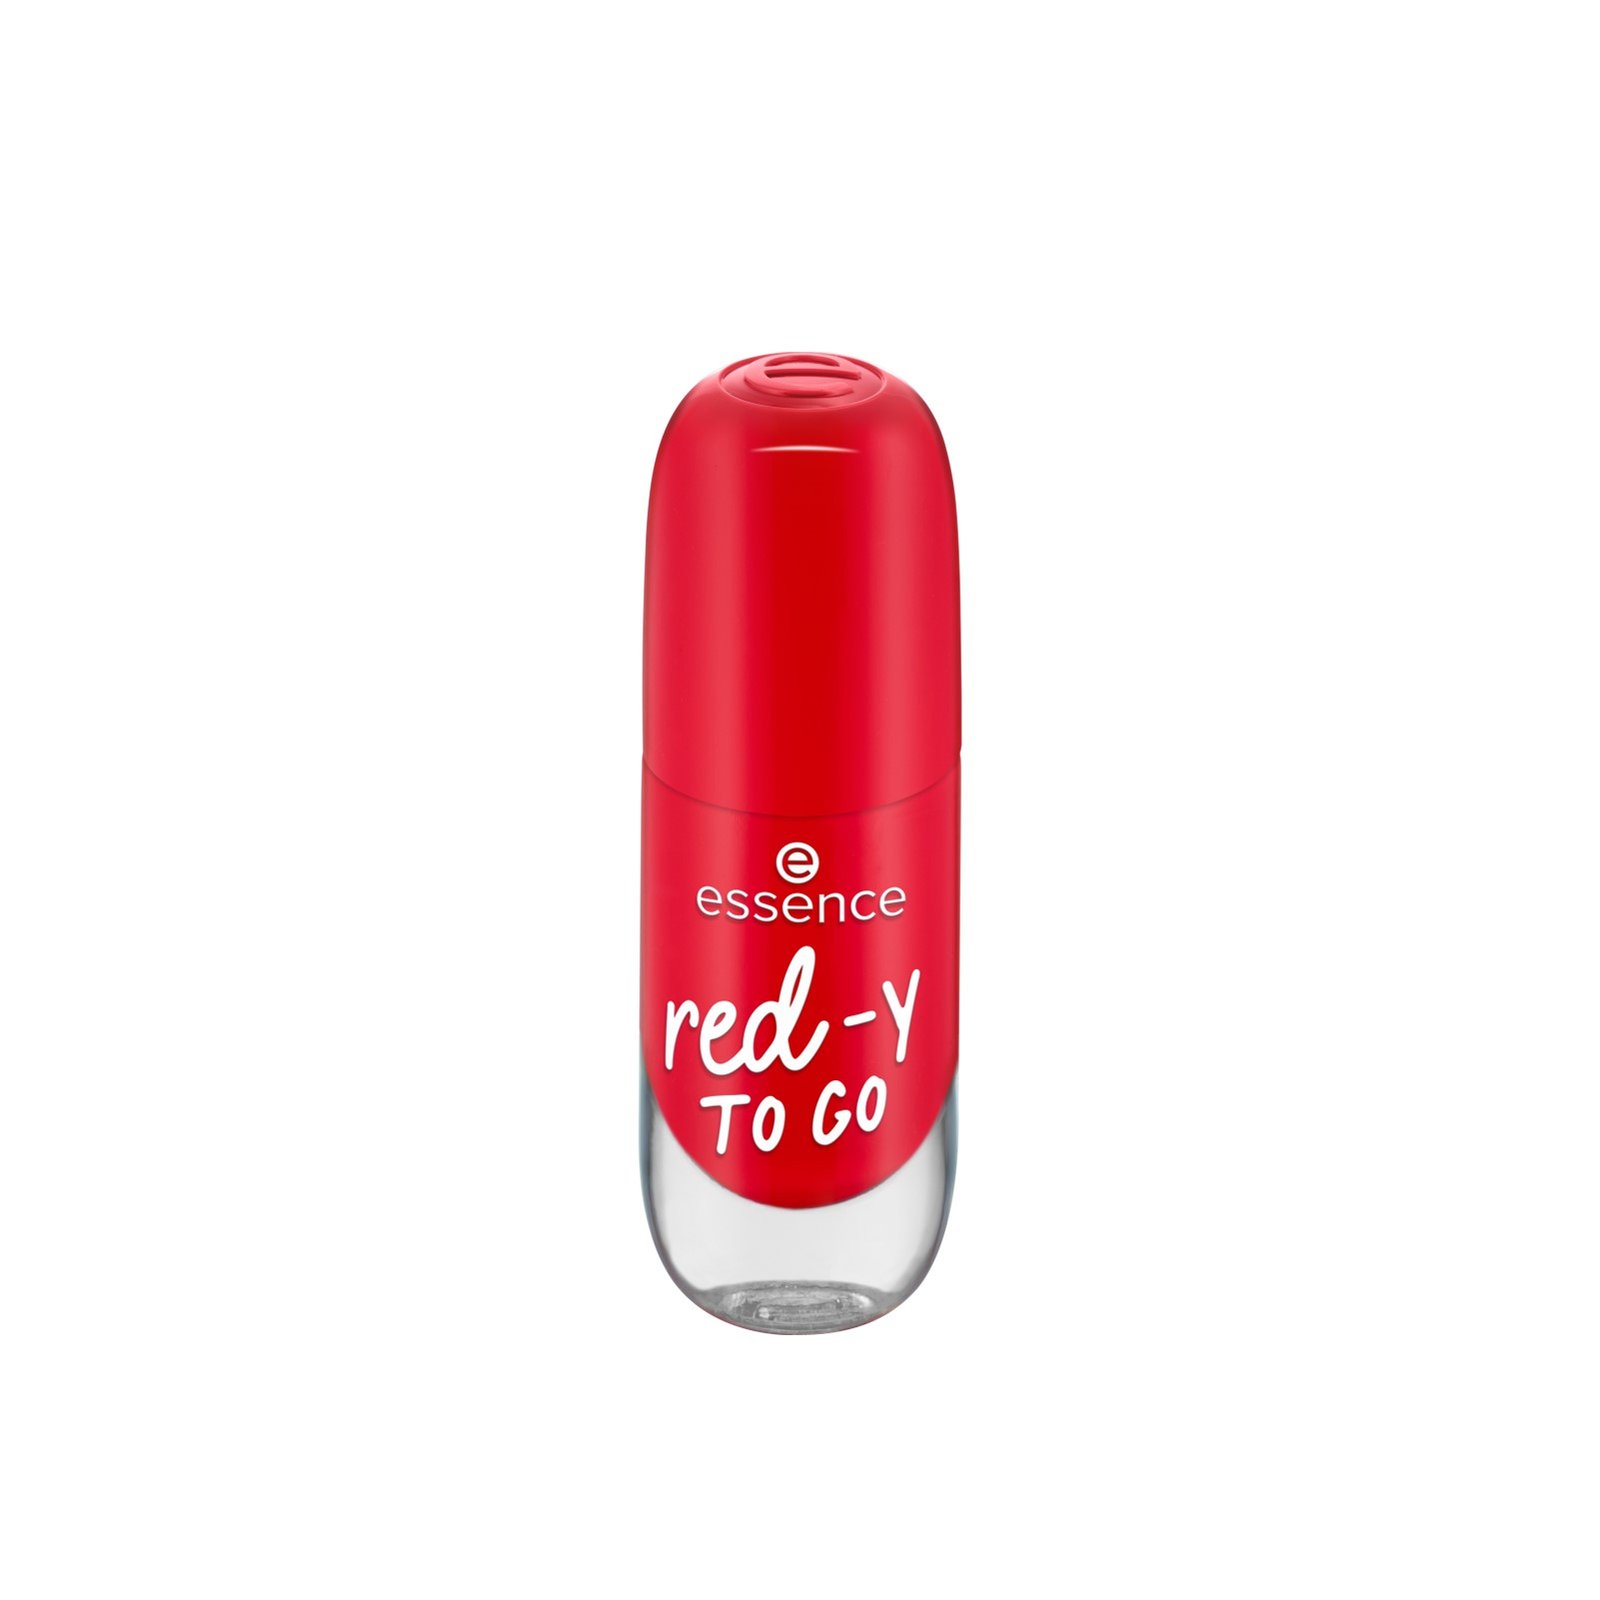 essence Gel Nail Colour 56 Red-y To Go 8ml (0.27 fl oz)